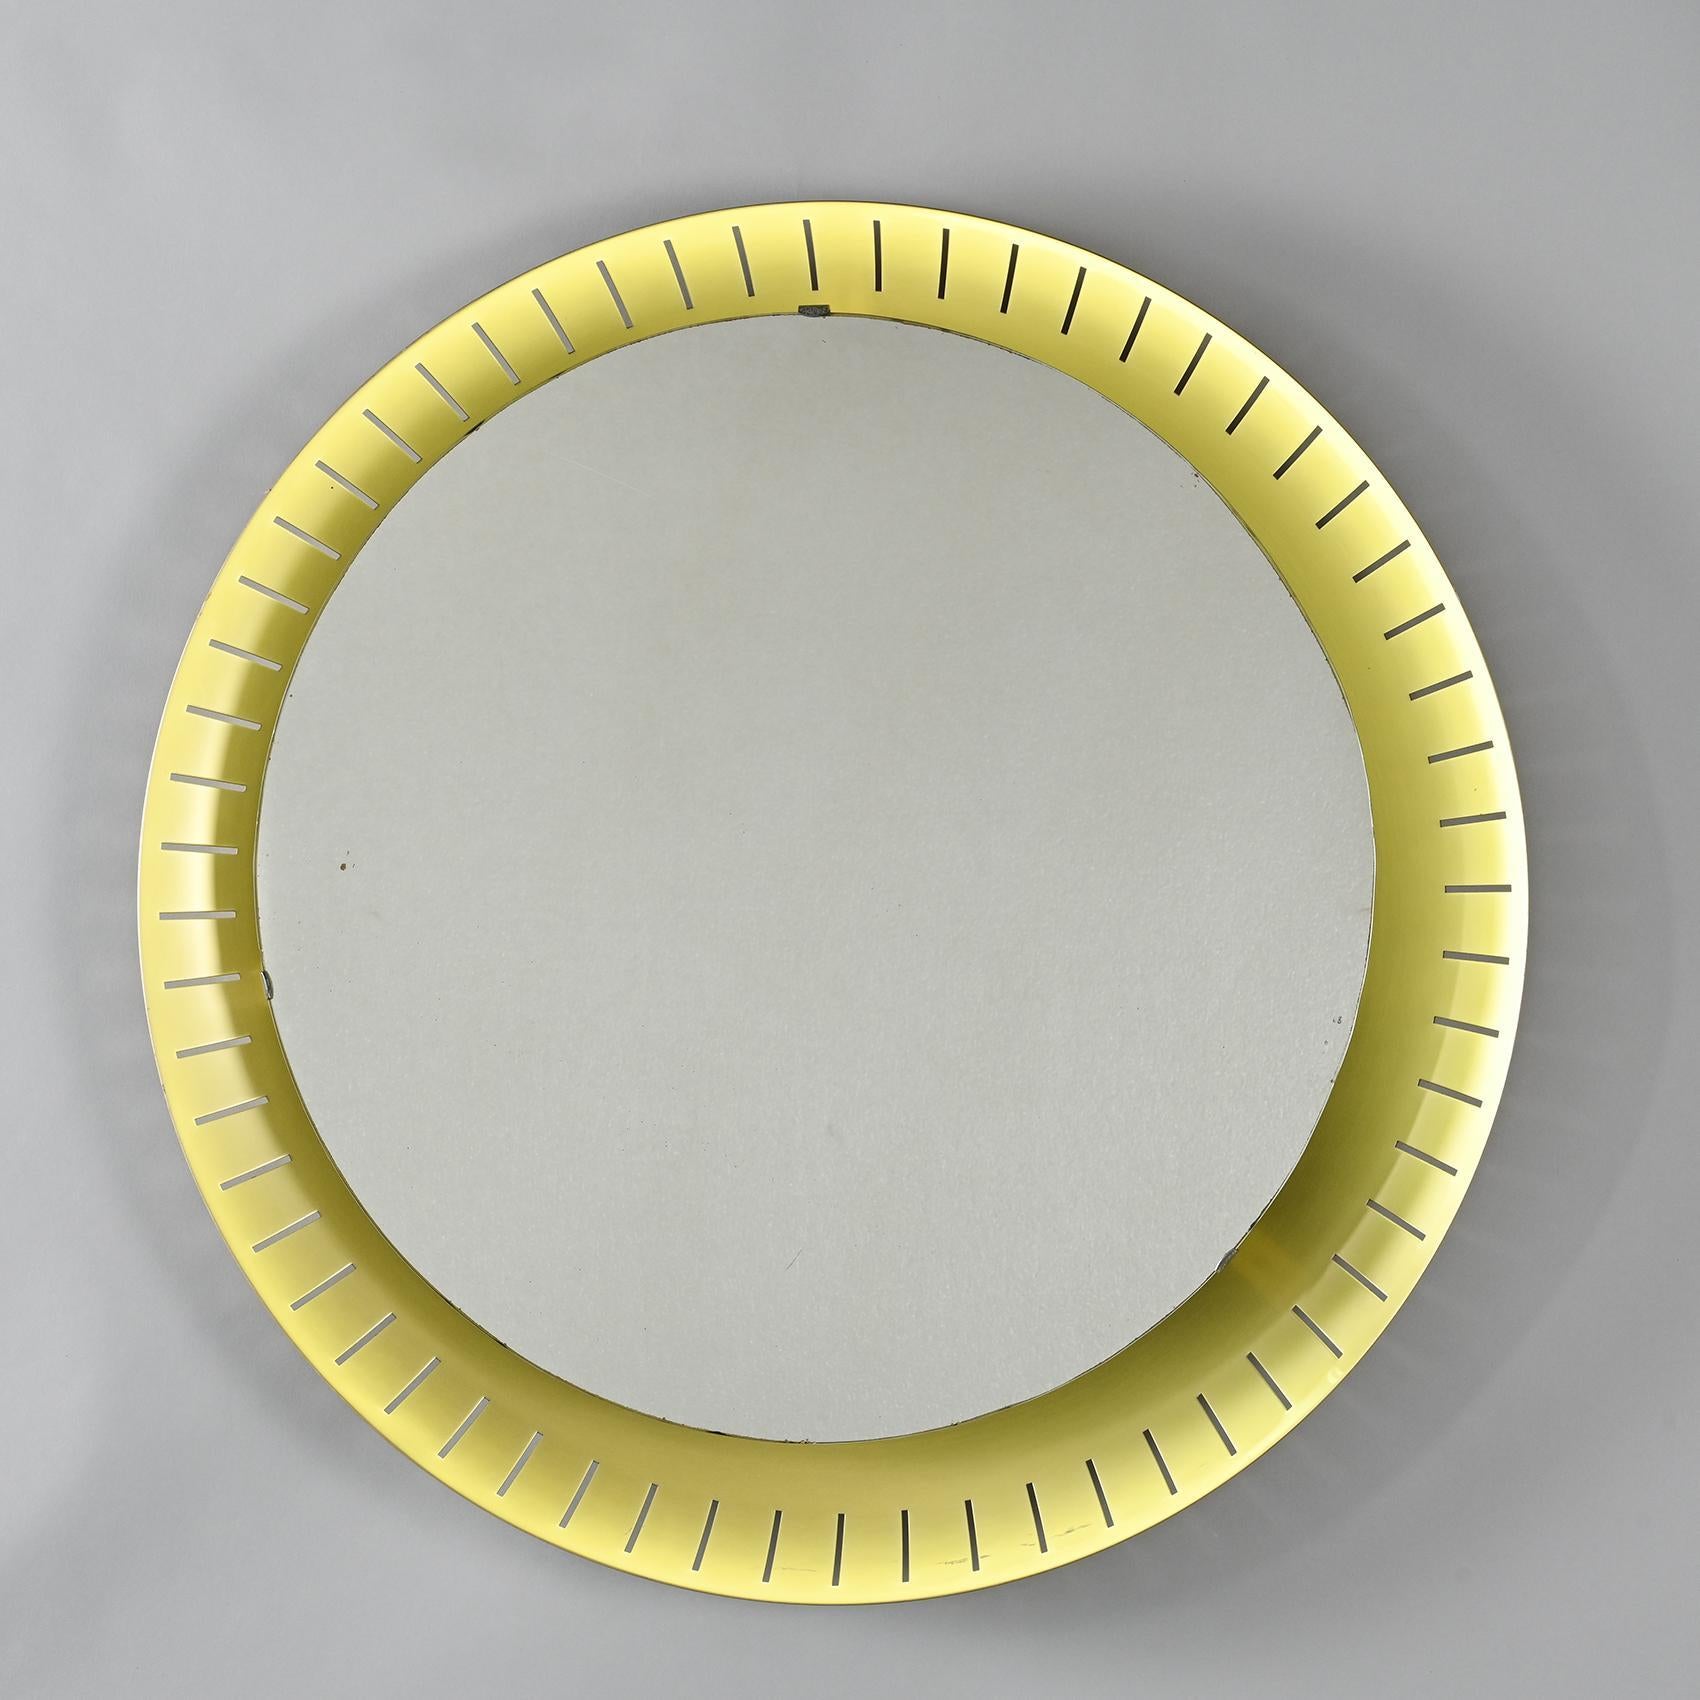 Lassen Sie sich von der zeitlosen Eleganz dieses runden, hinterleuchteten Spiegels von Stilnovo, einem 1946 von Bruno Gatta in Mailand gegründeten Beleuchtungsunternehmen, begeistern.

Seine Kontur aus eloxiertem, perforiertem Aluminium rahmt den